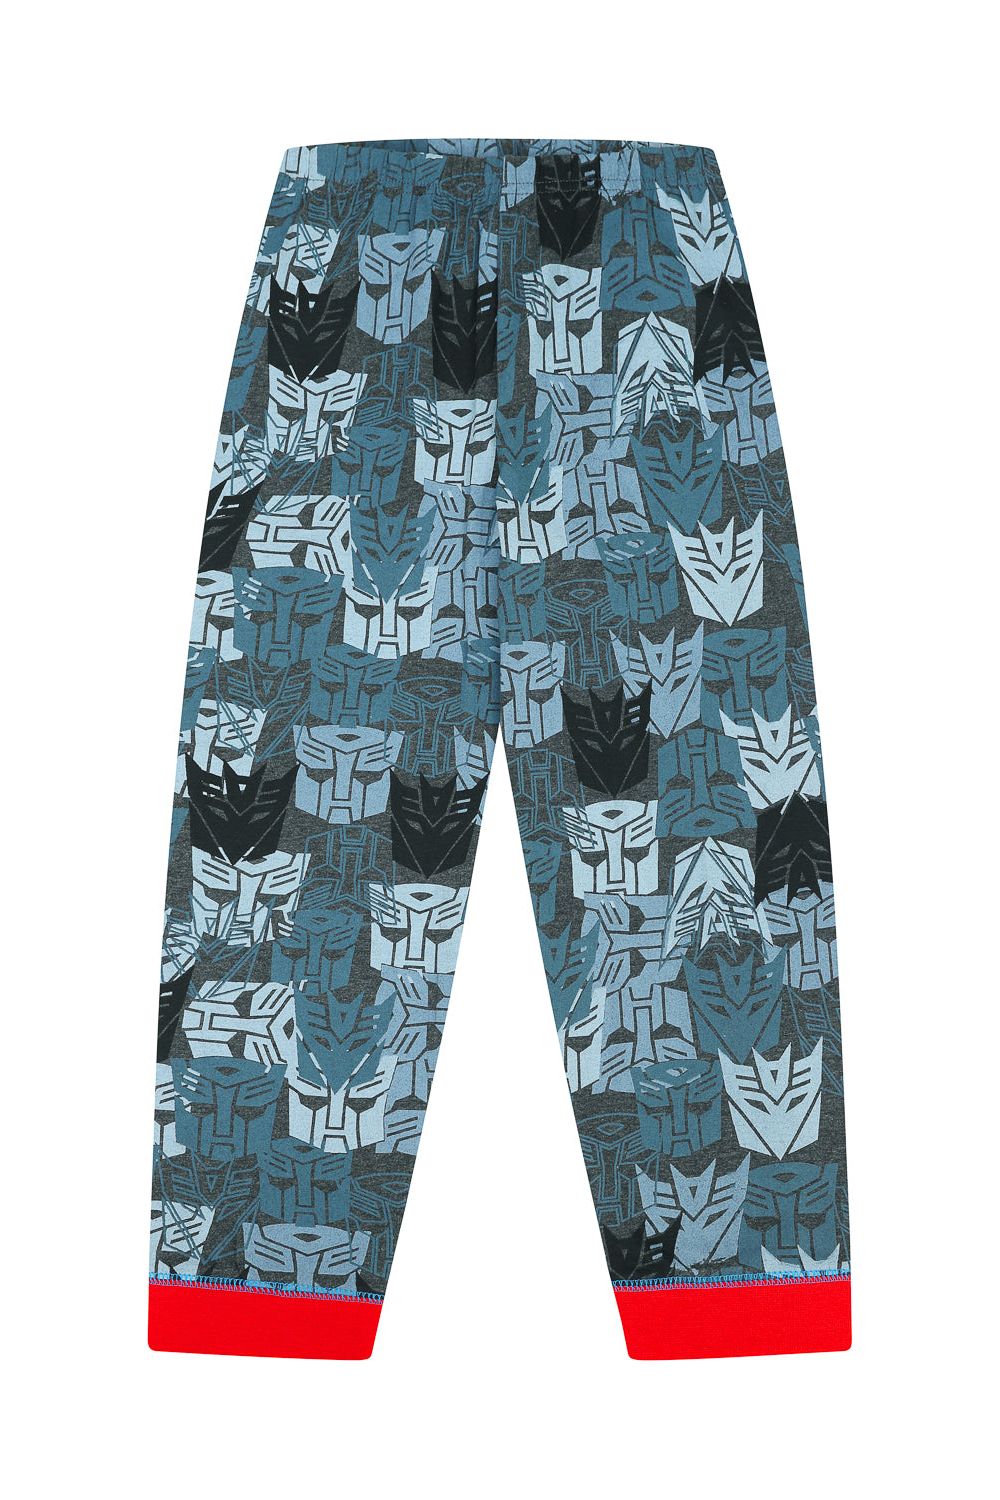 Boys Transformers Optimus Prime and Bumblebee Long Pyjamas - Pyjamas.com